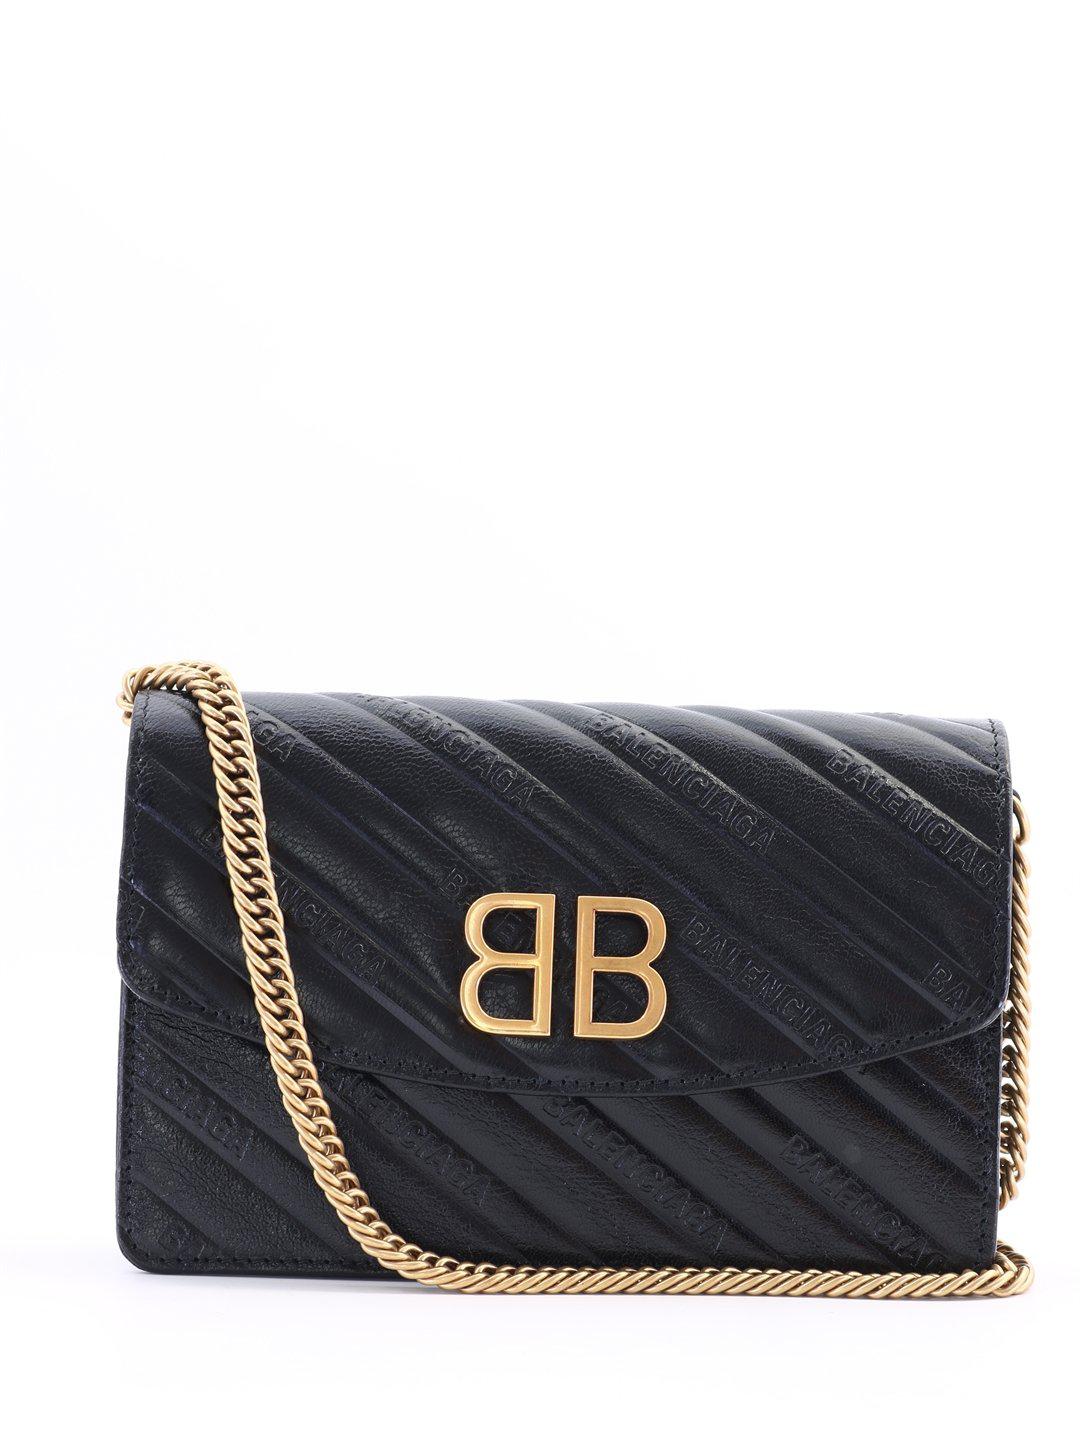 Balenciaga Bb Quilted Crossbody Bag in Black | Lyst